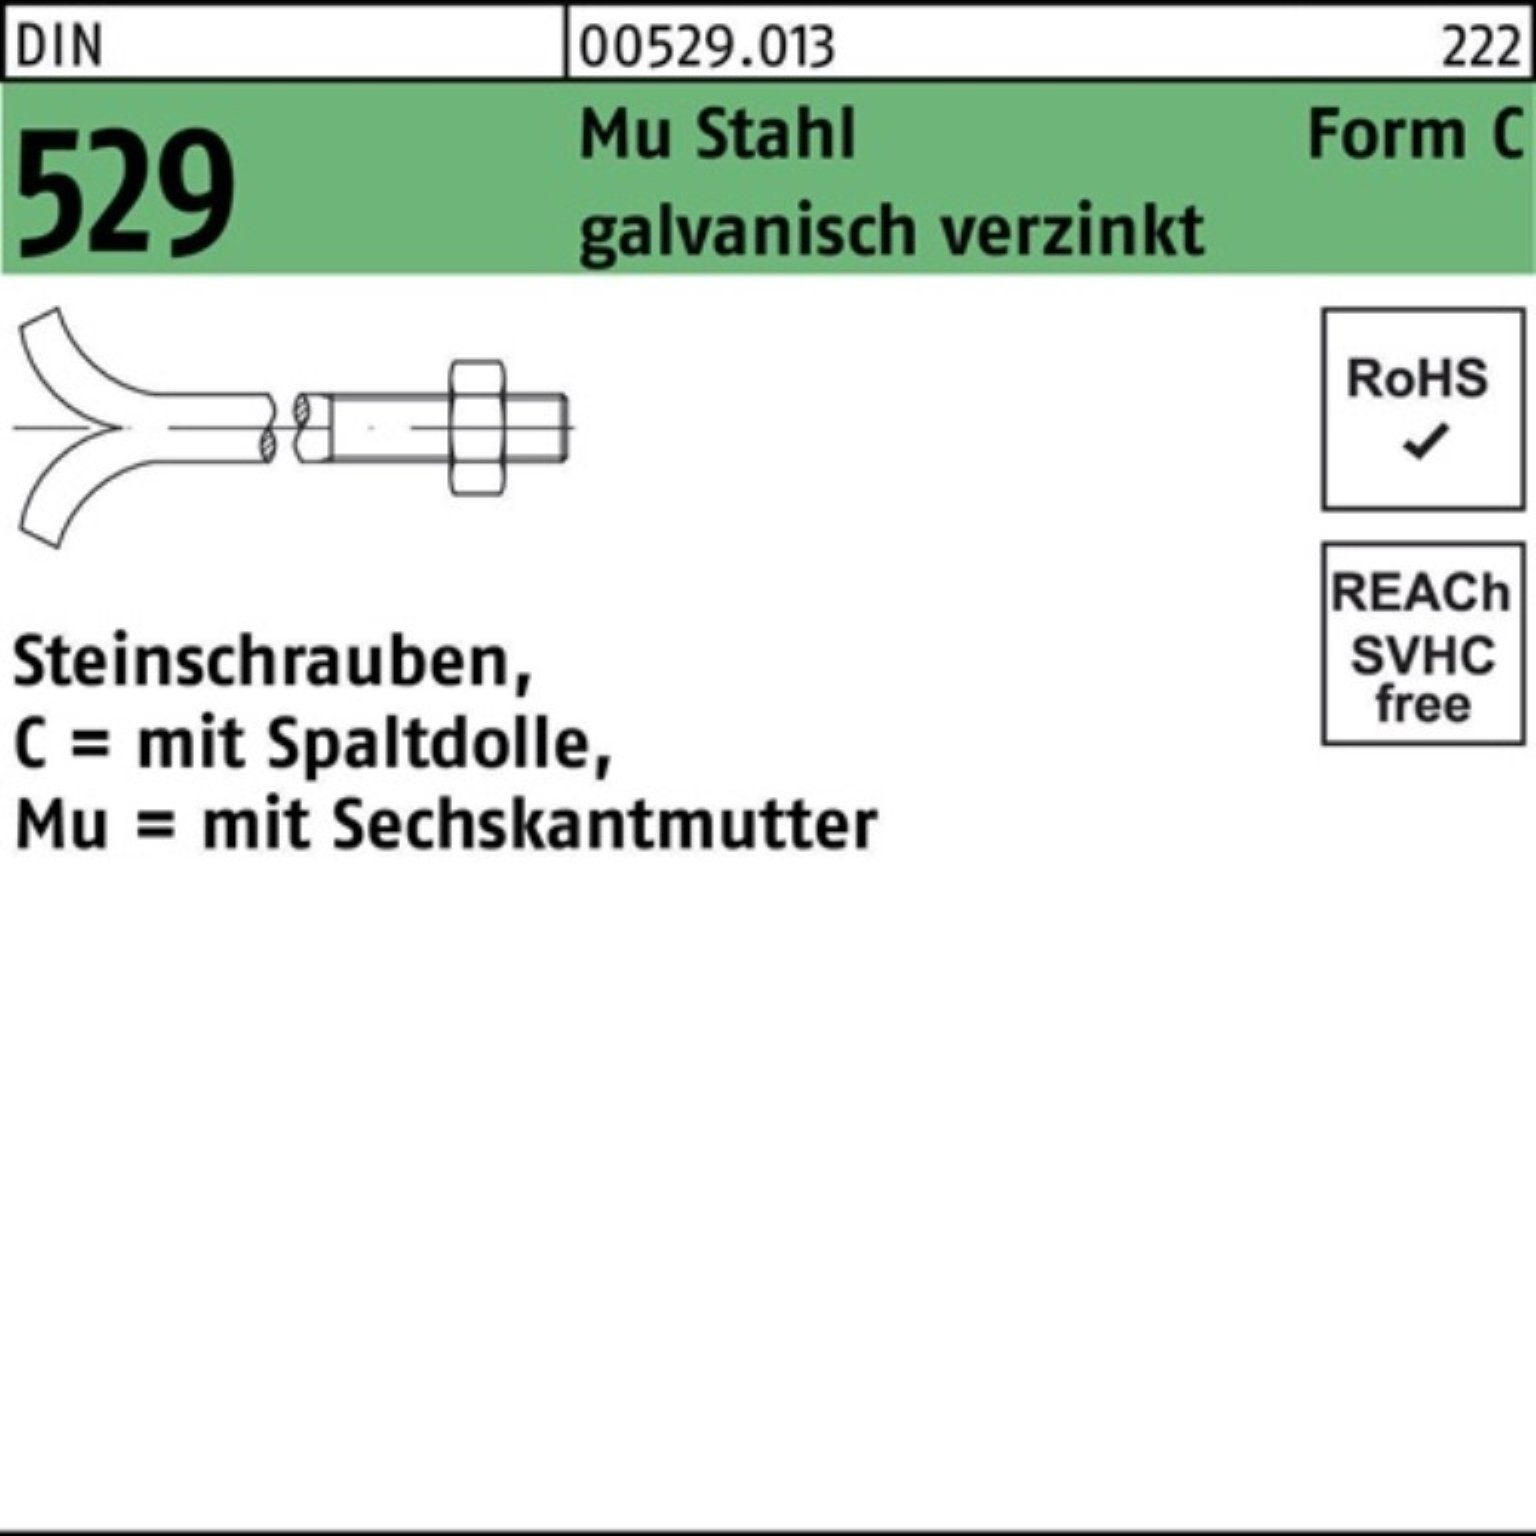 Reyher Schraube 100er 3. Spaltdolle/6-ktmutter 529 Steinschraube Mu DIN Pack CM 12x180